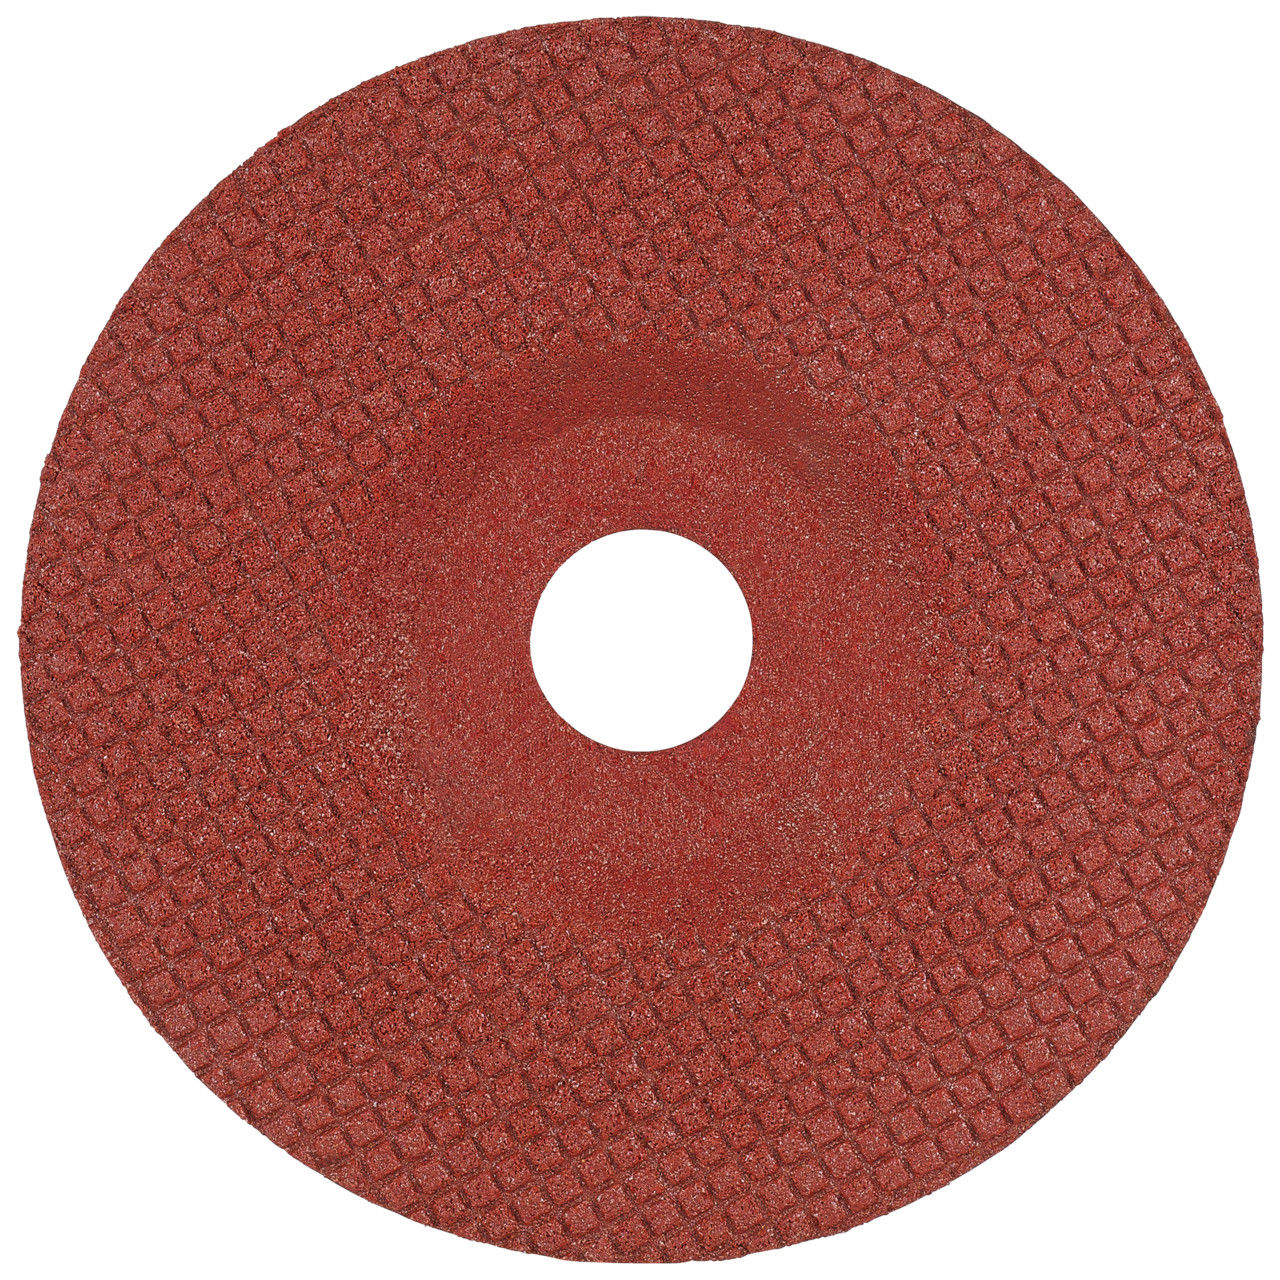 TYROLIT Disque abrasif DxH 125x22,23 TOUCH pour acier inoxydable et métaux non ferreux, forme : 29T - version déportée, Art. 236319